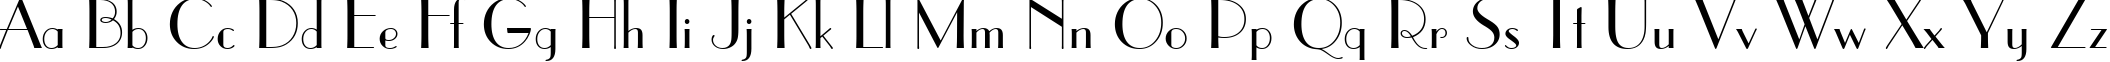 Пример написания английского алфавита шрифтом Parisian BT